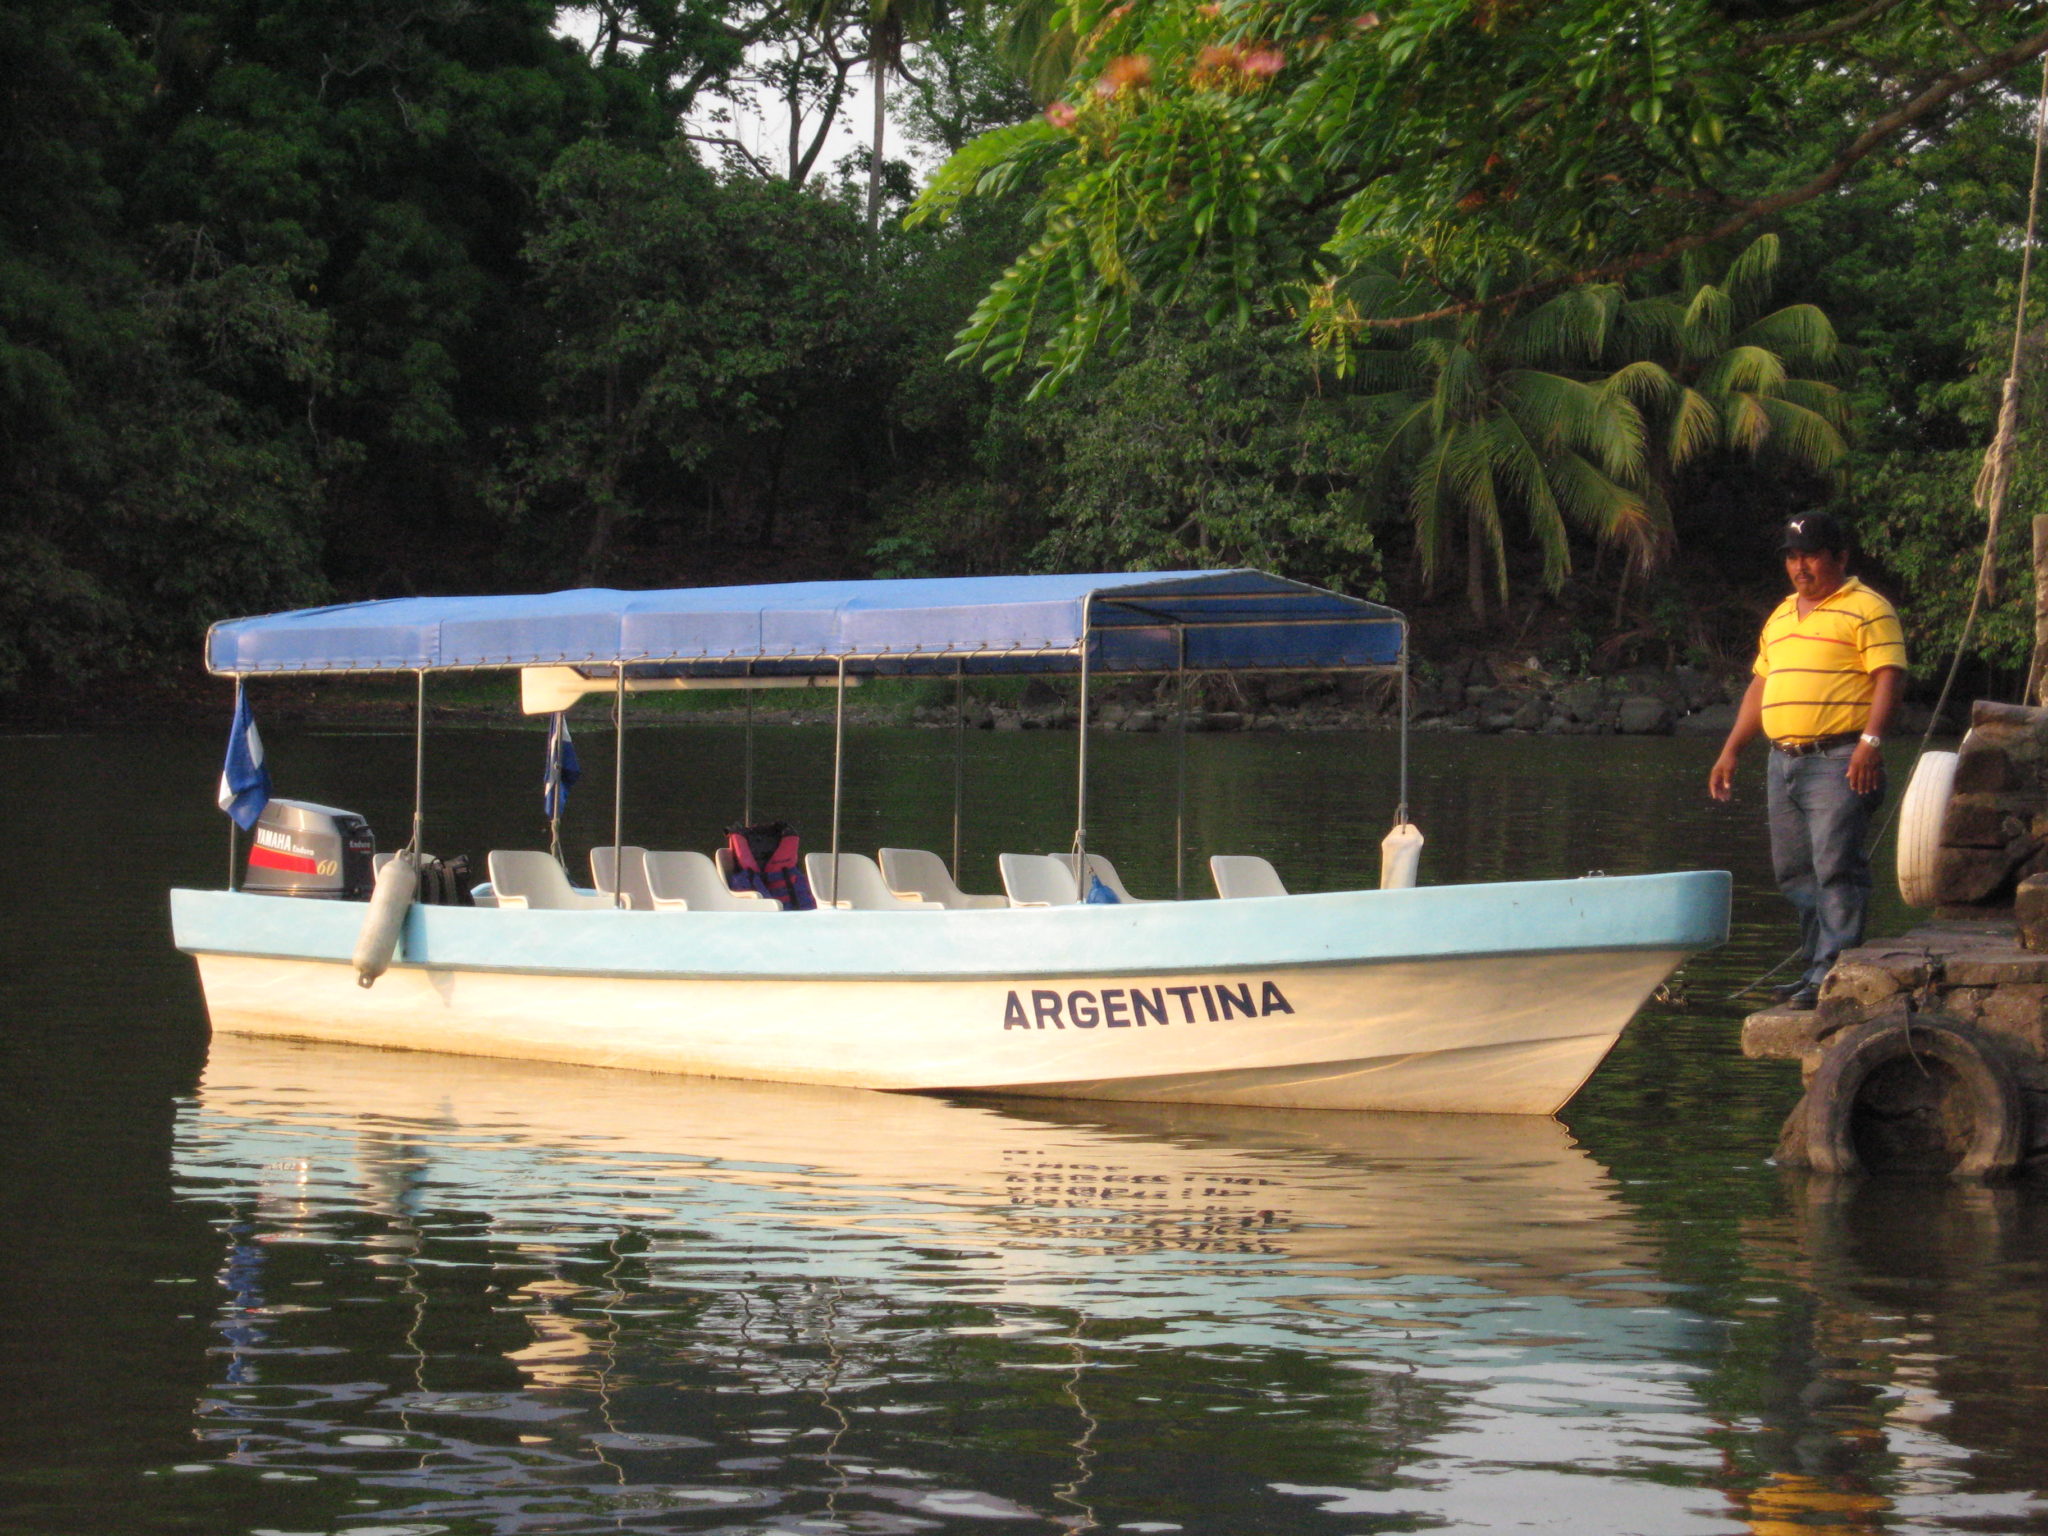 Boat Ride in Lake Nicaragua - Nicaragua Adventures